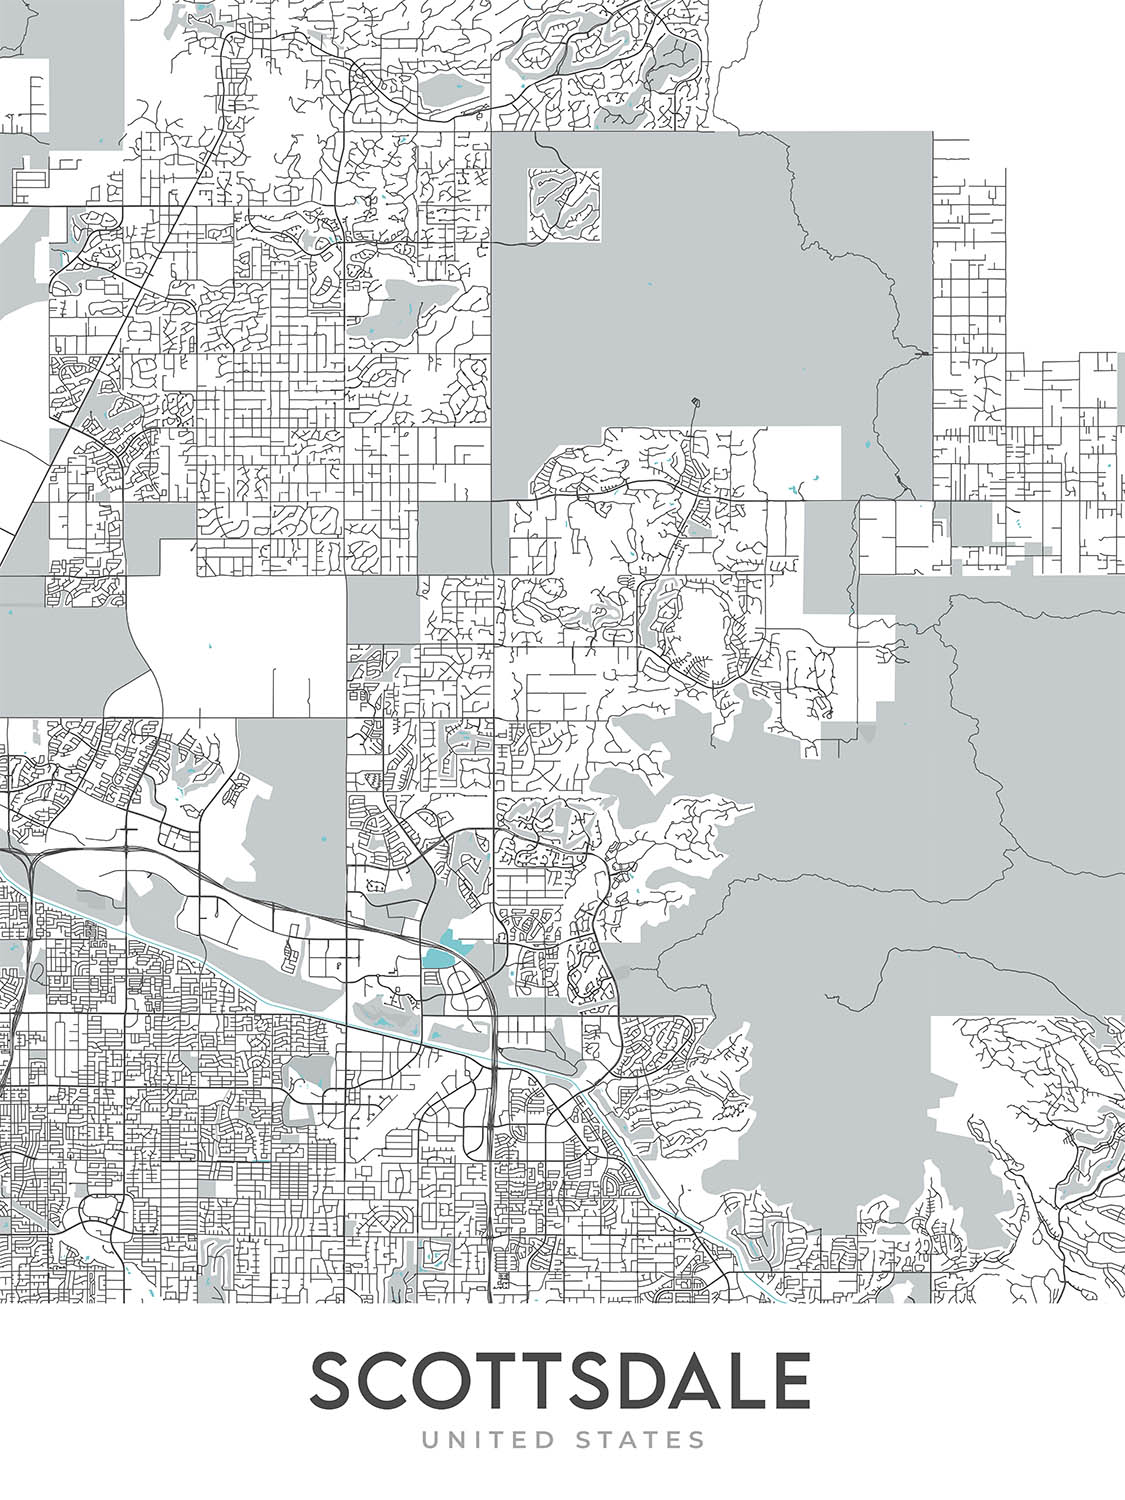 Mapa moderno de la ciudad de Scottsdale, AZ: centro, casco antiguo, estadio de Scottsdale, Scottsdale Fashion Square, Loop 101